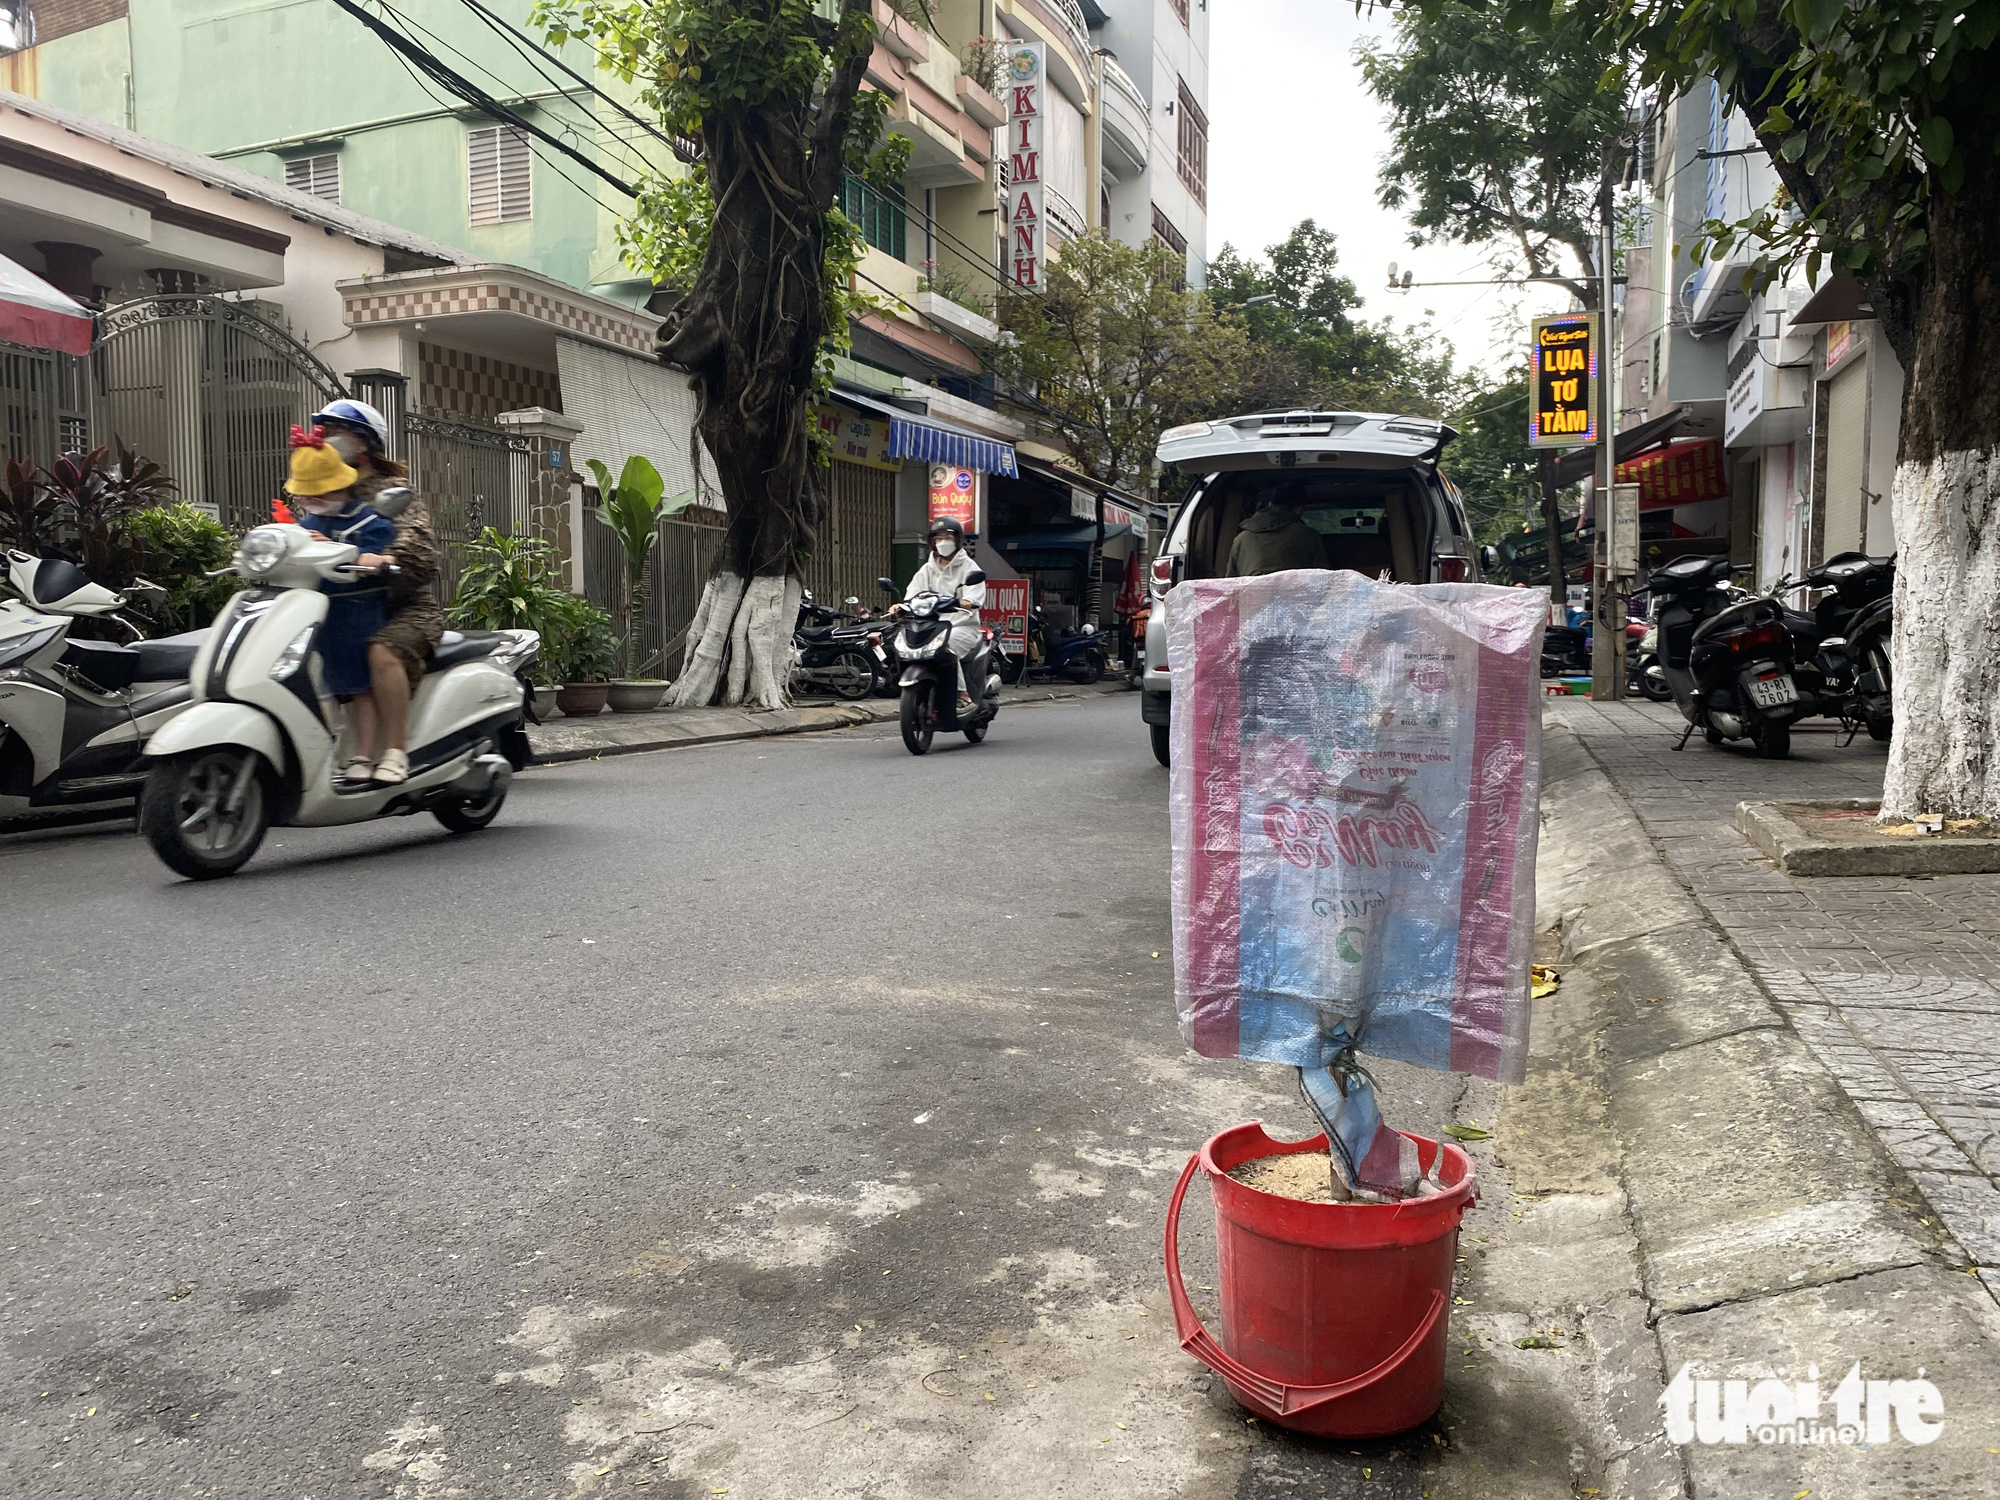 Muôn kiểu xí phần lòng đường để cản trở đậu ô tô ở Đà Nẵng - Ảnh 5.